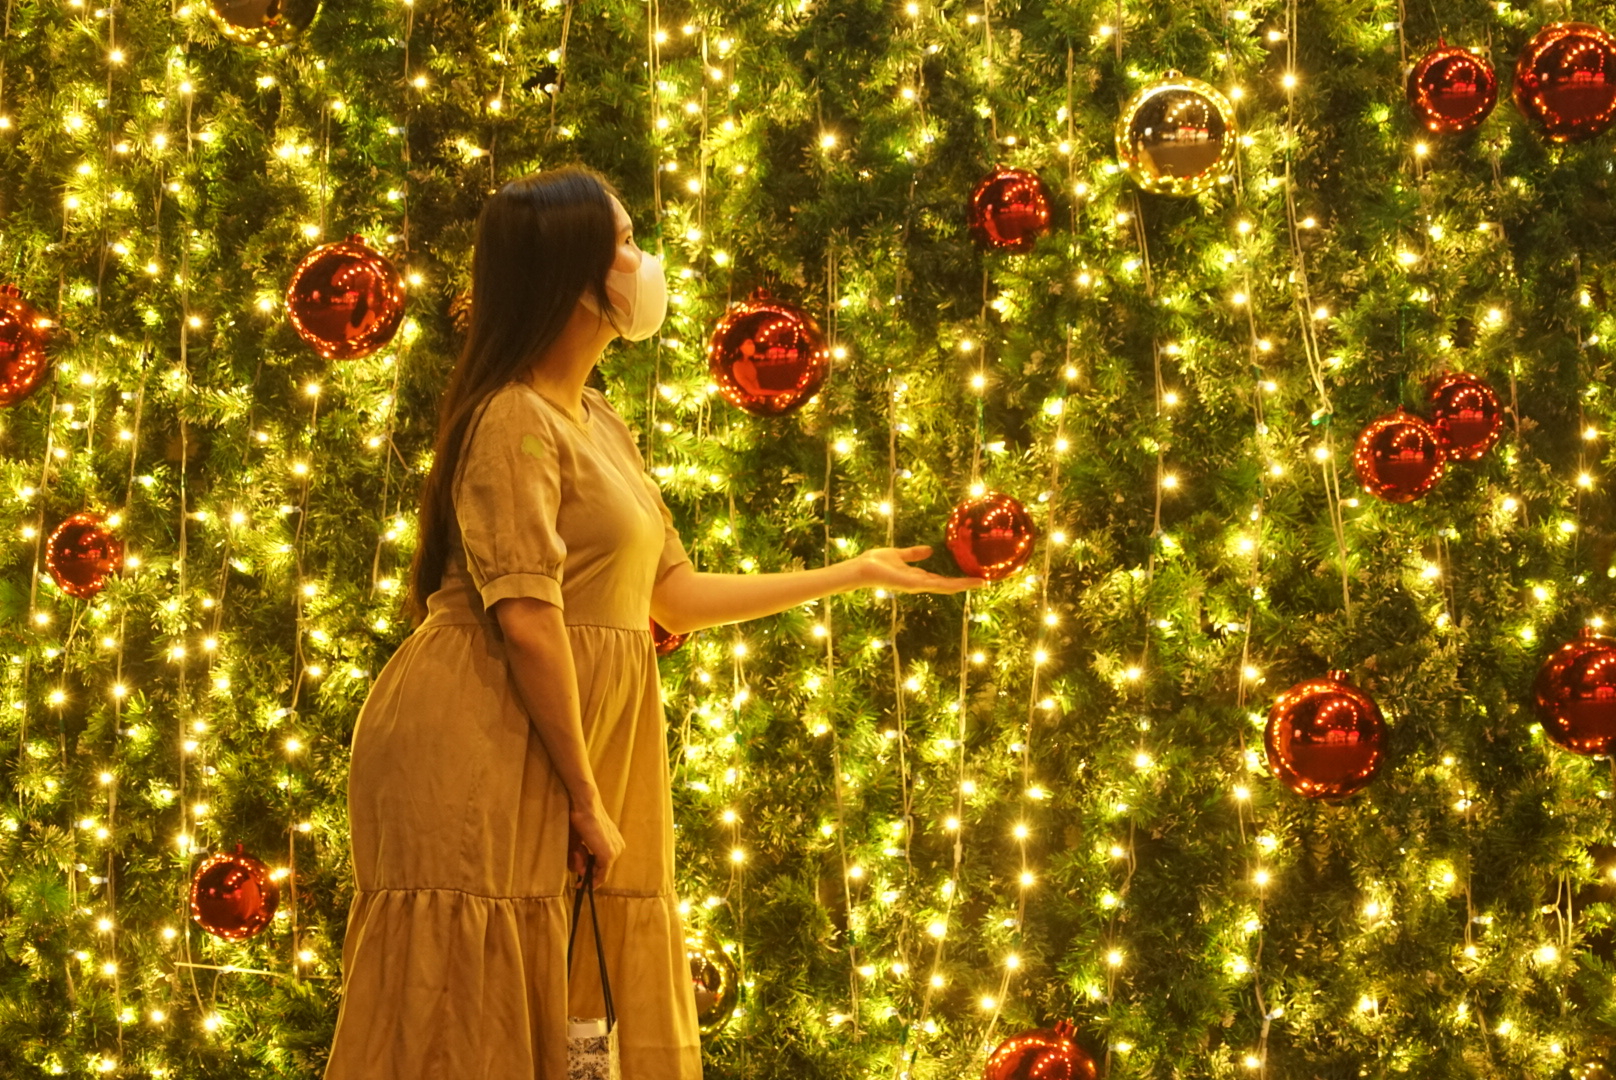 Cây thông Noel khổng lồ: Trẻ em và người lớn đều đang mong chờ xem cây thông Noel khổng lồ bừng sáng trong mùa lễ hội sắp tới. Đây là thời điểm thích hợp để quây quần bên gia đình và tận hưởng những phút giây đầy tình cảm và vui nhộn bên cây thông này.